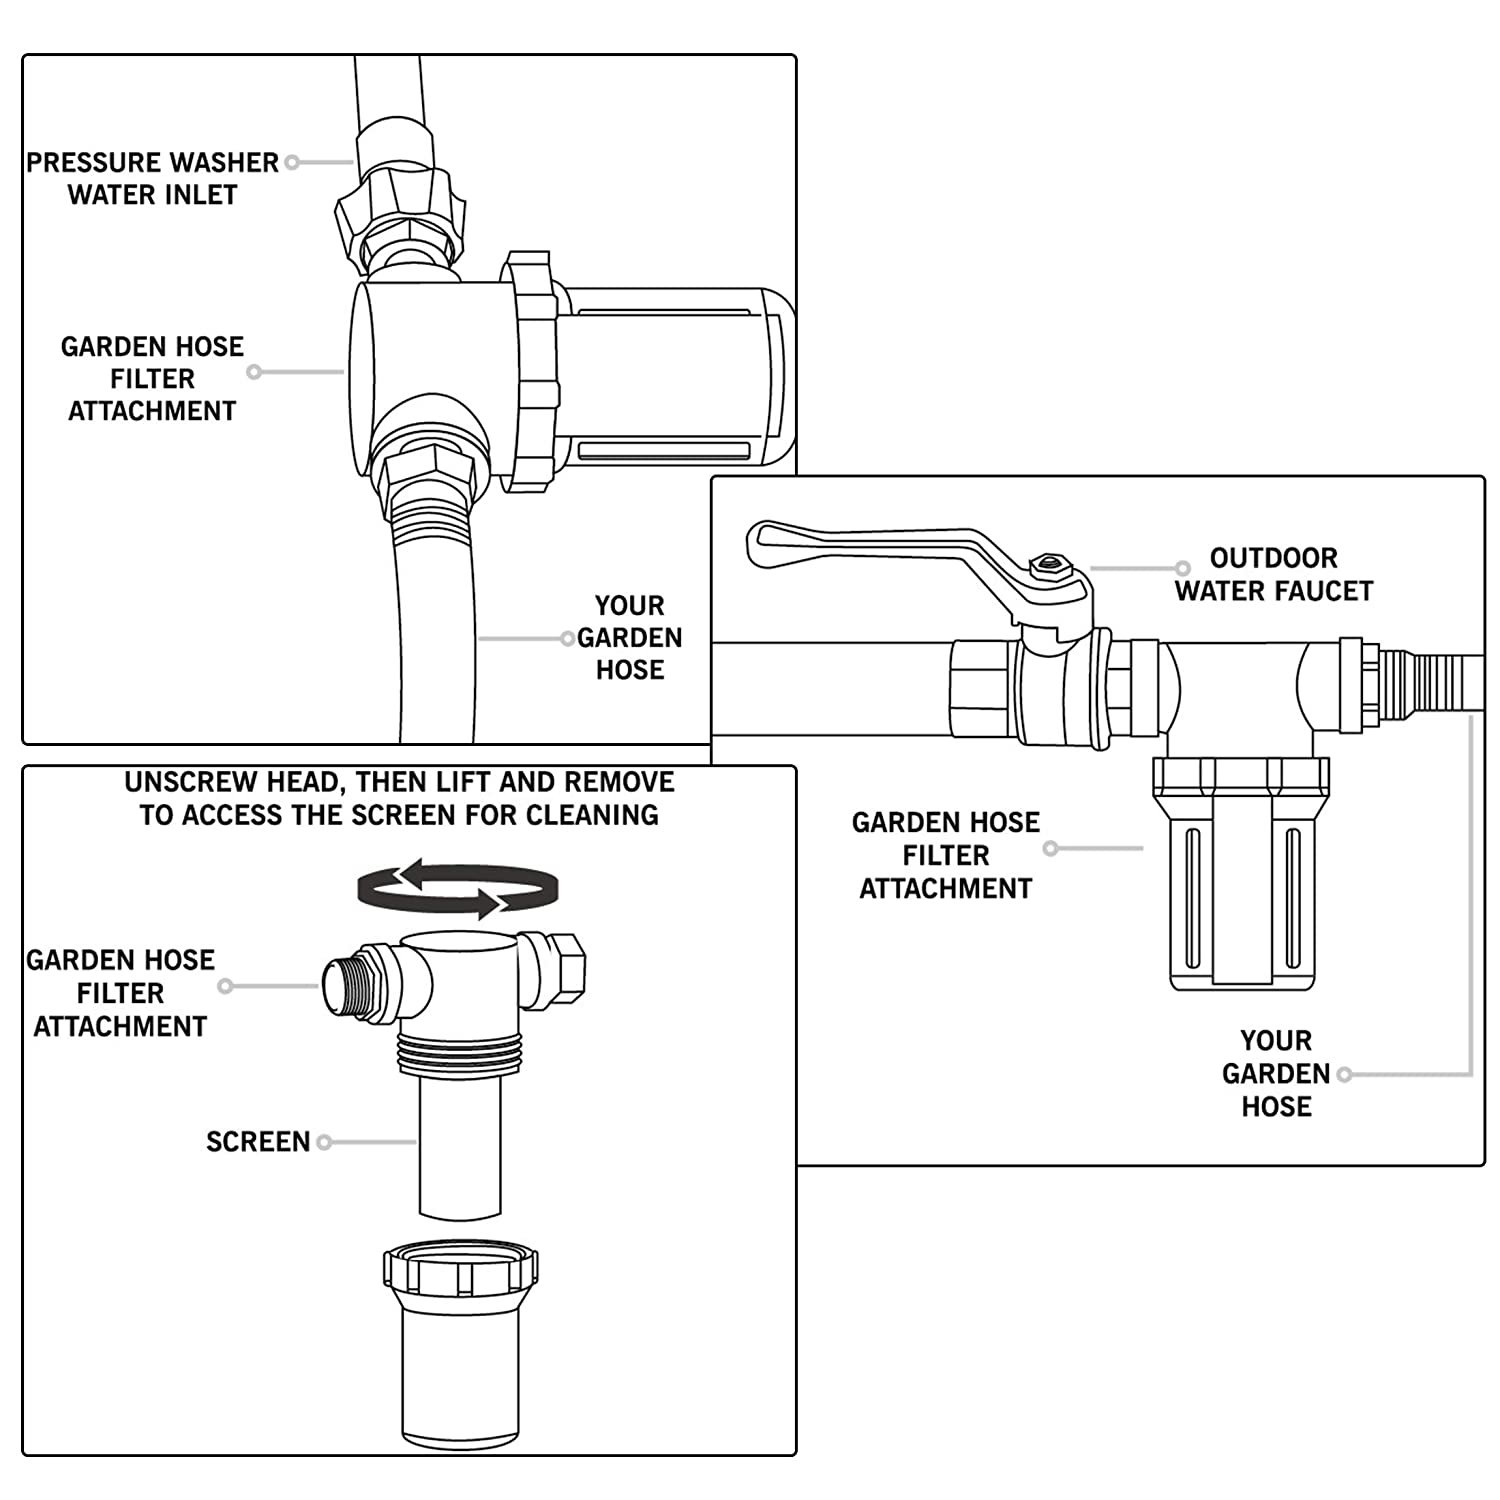 Inline-Siebbefestigung für Druckwaschmaschinen im Freien im Freien am Wasserhahn RV